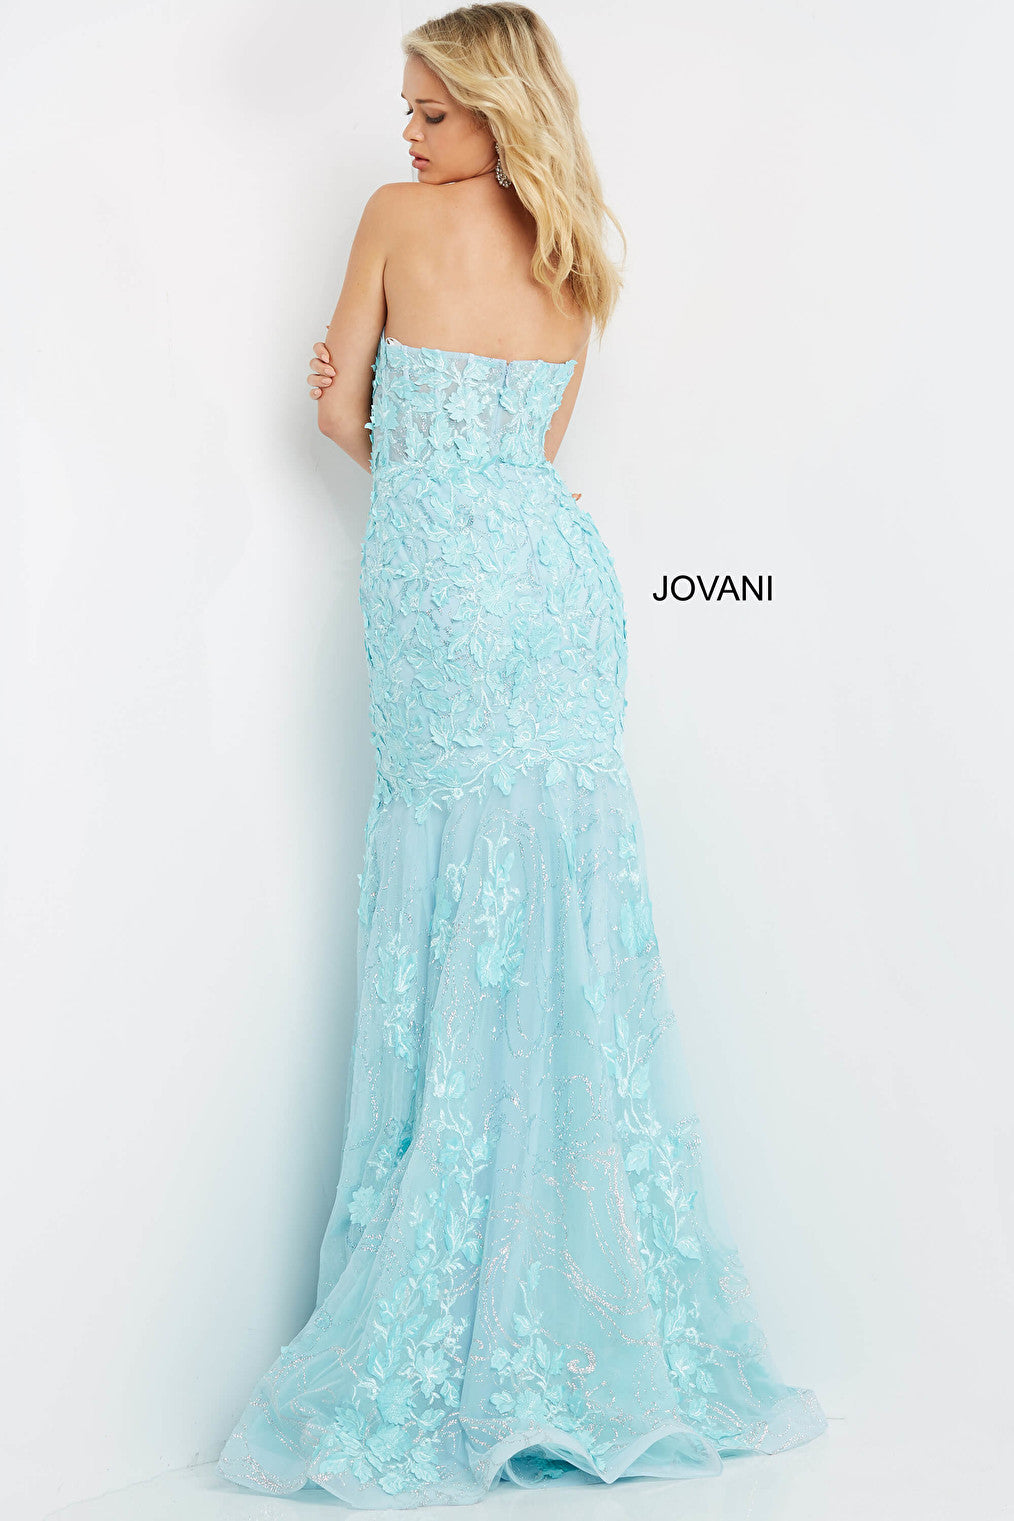 Jovani mint mermaid prom dress 07935